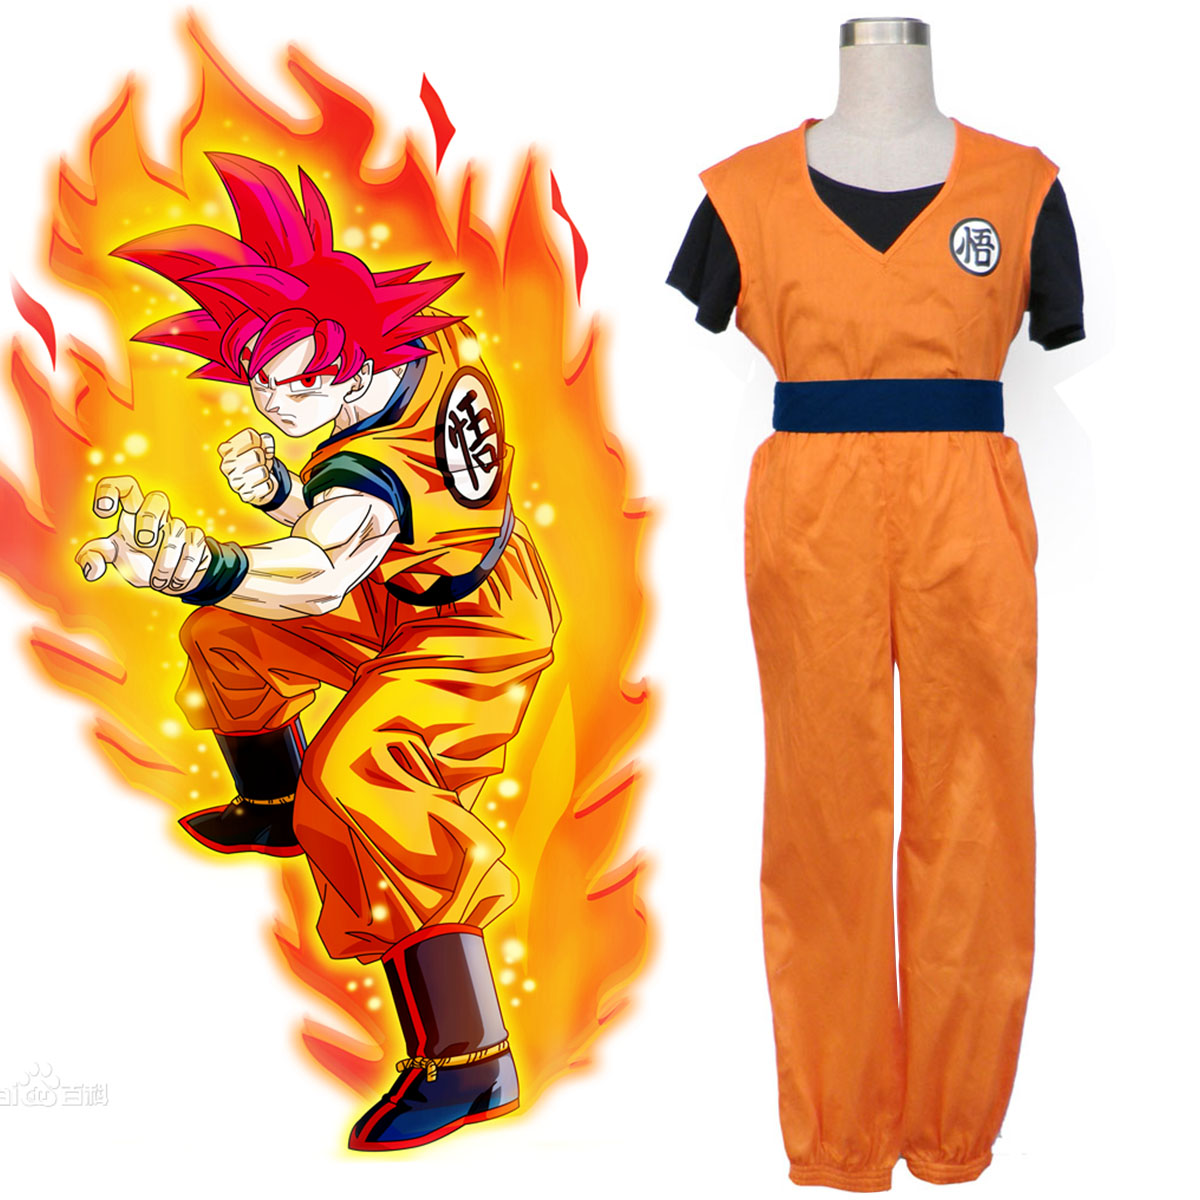 Dragon Ball Son Goku 2 Anime Cosplay Costumes Outfit